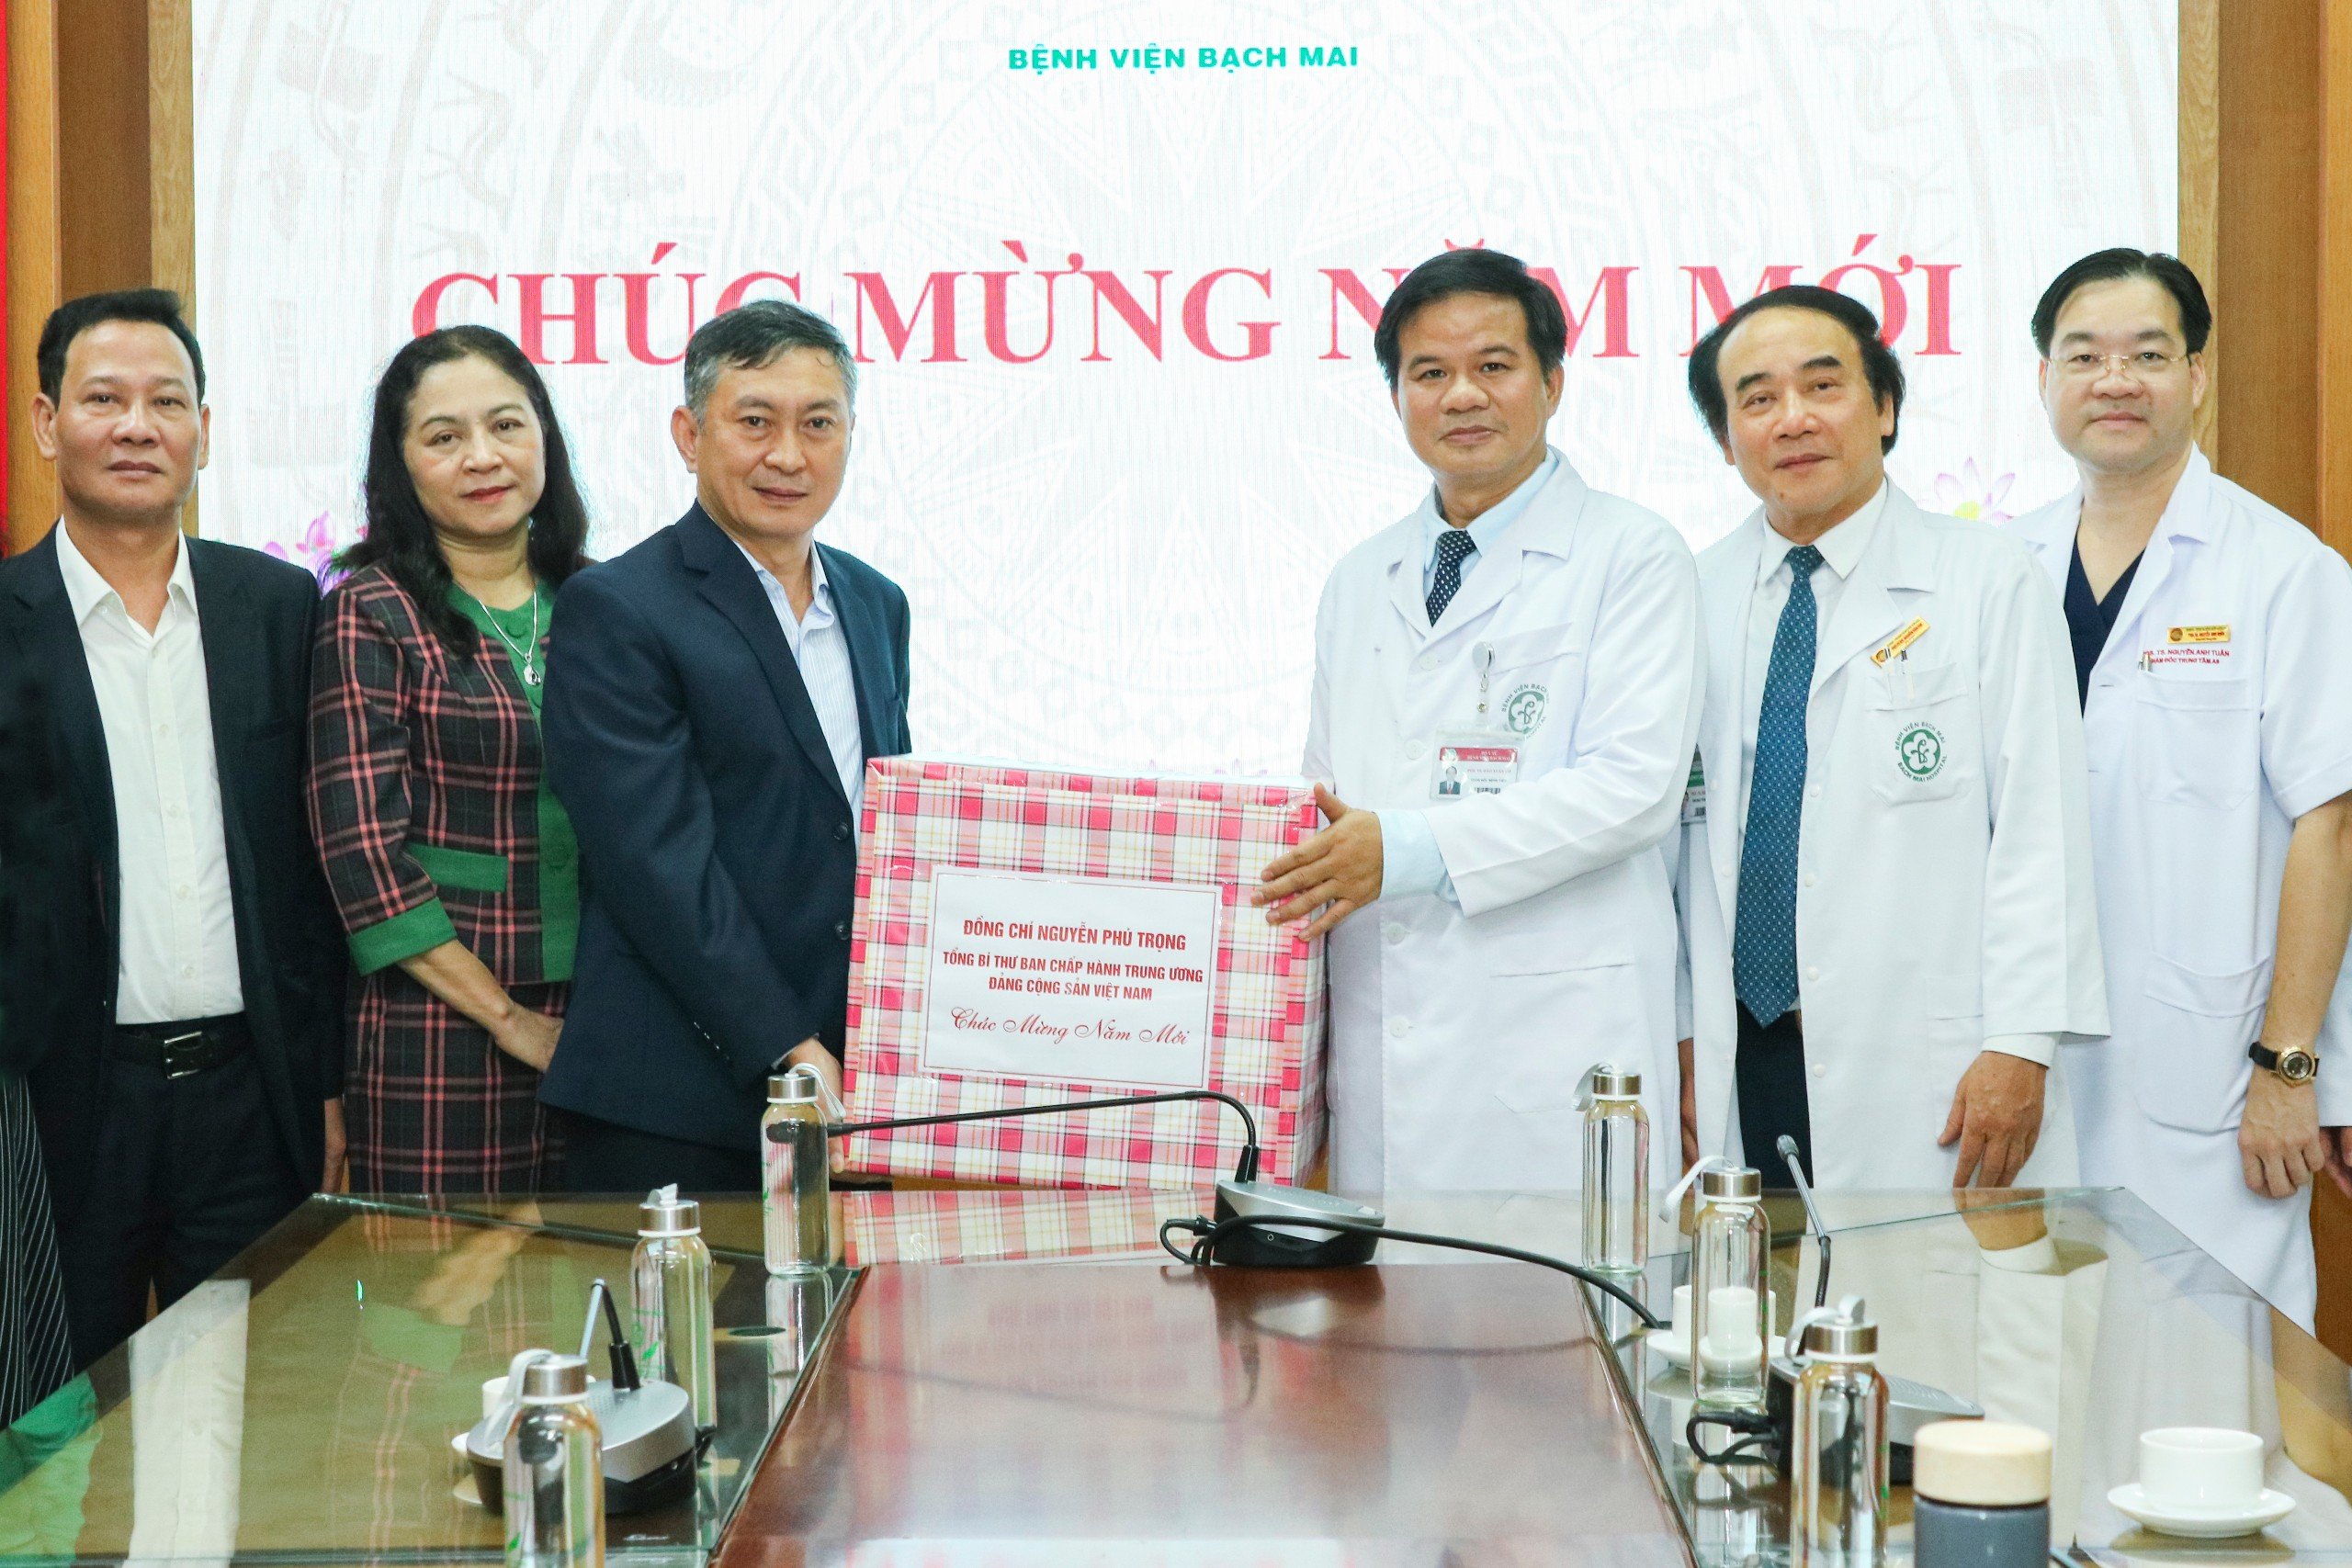 Bệnh viện Bạch Mai vinh dự nhận quà Tết của Tổng Bí thư Nguyễn Phú Trọng và Văn phòng Trung ương Đảng- Ảnh 2.